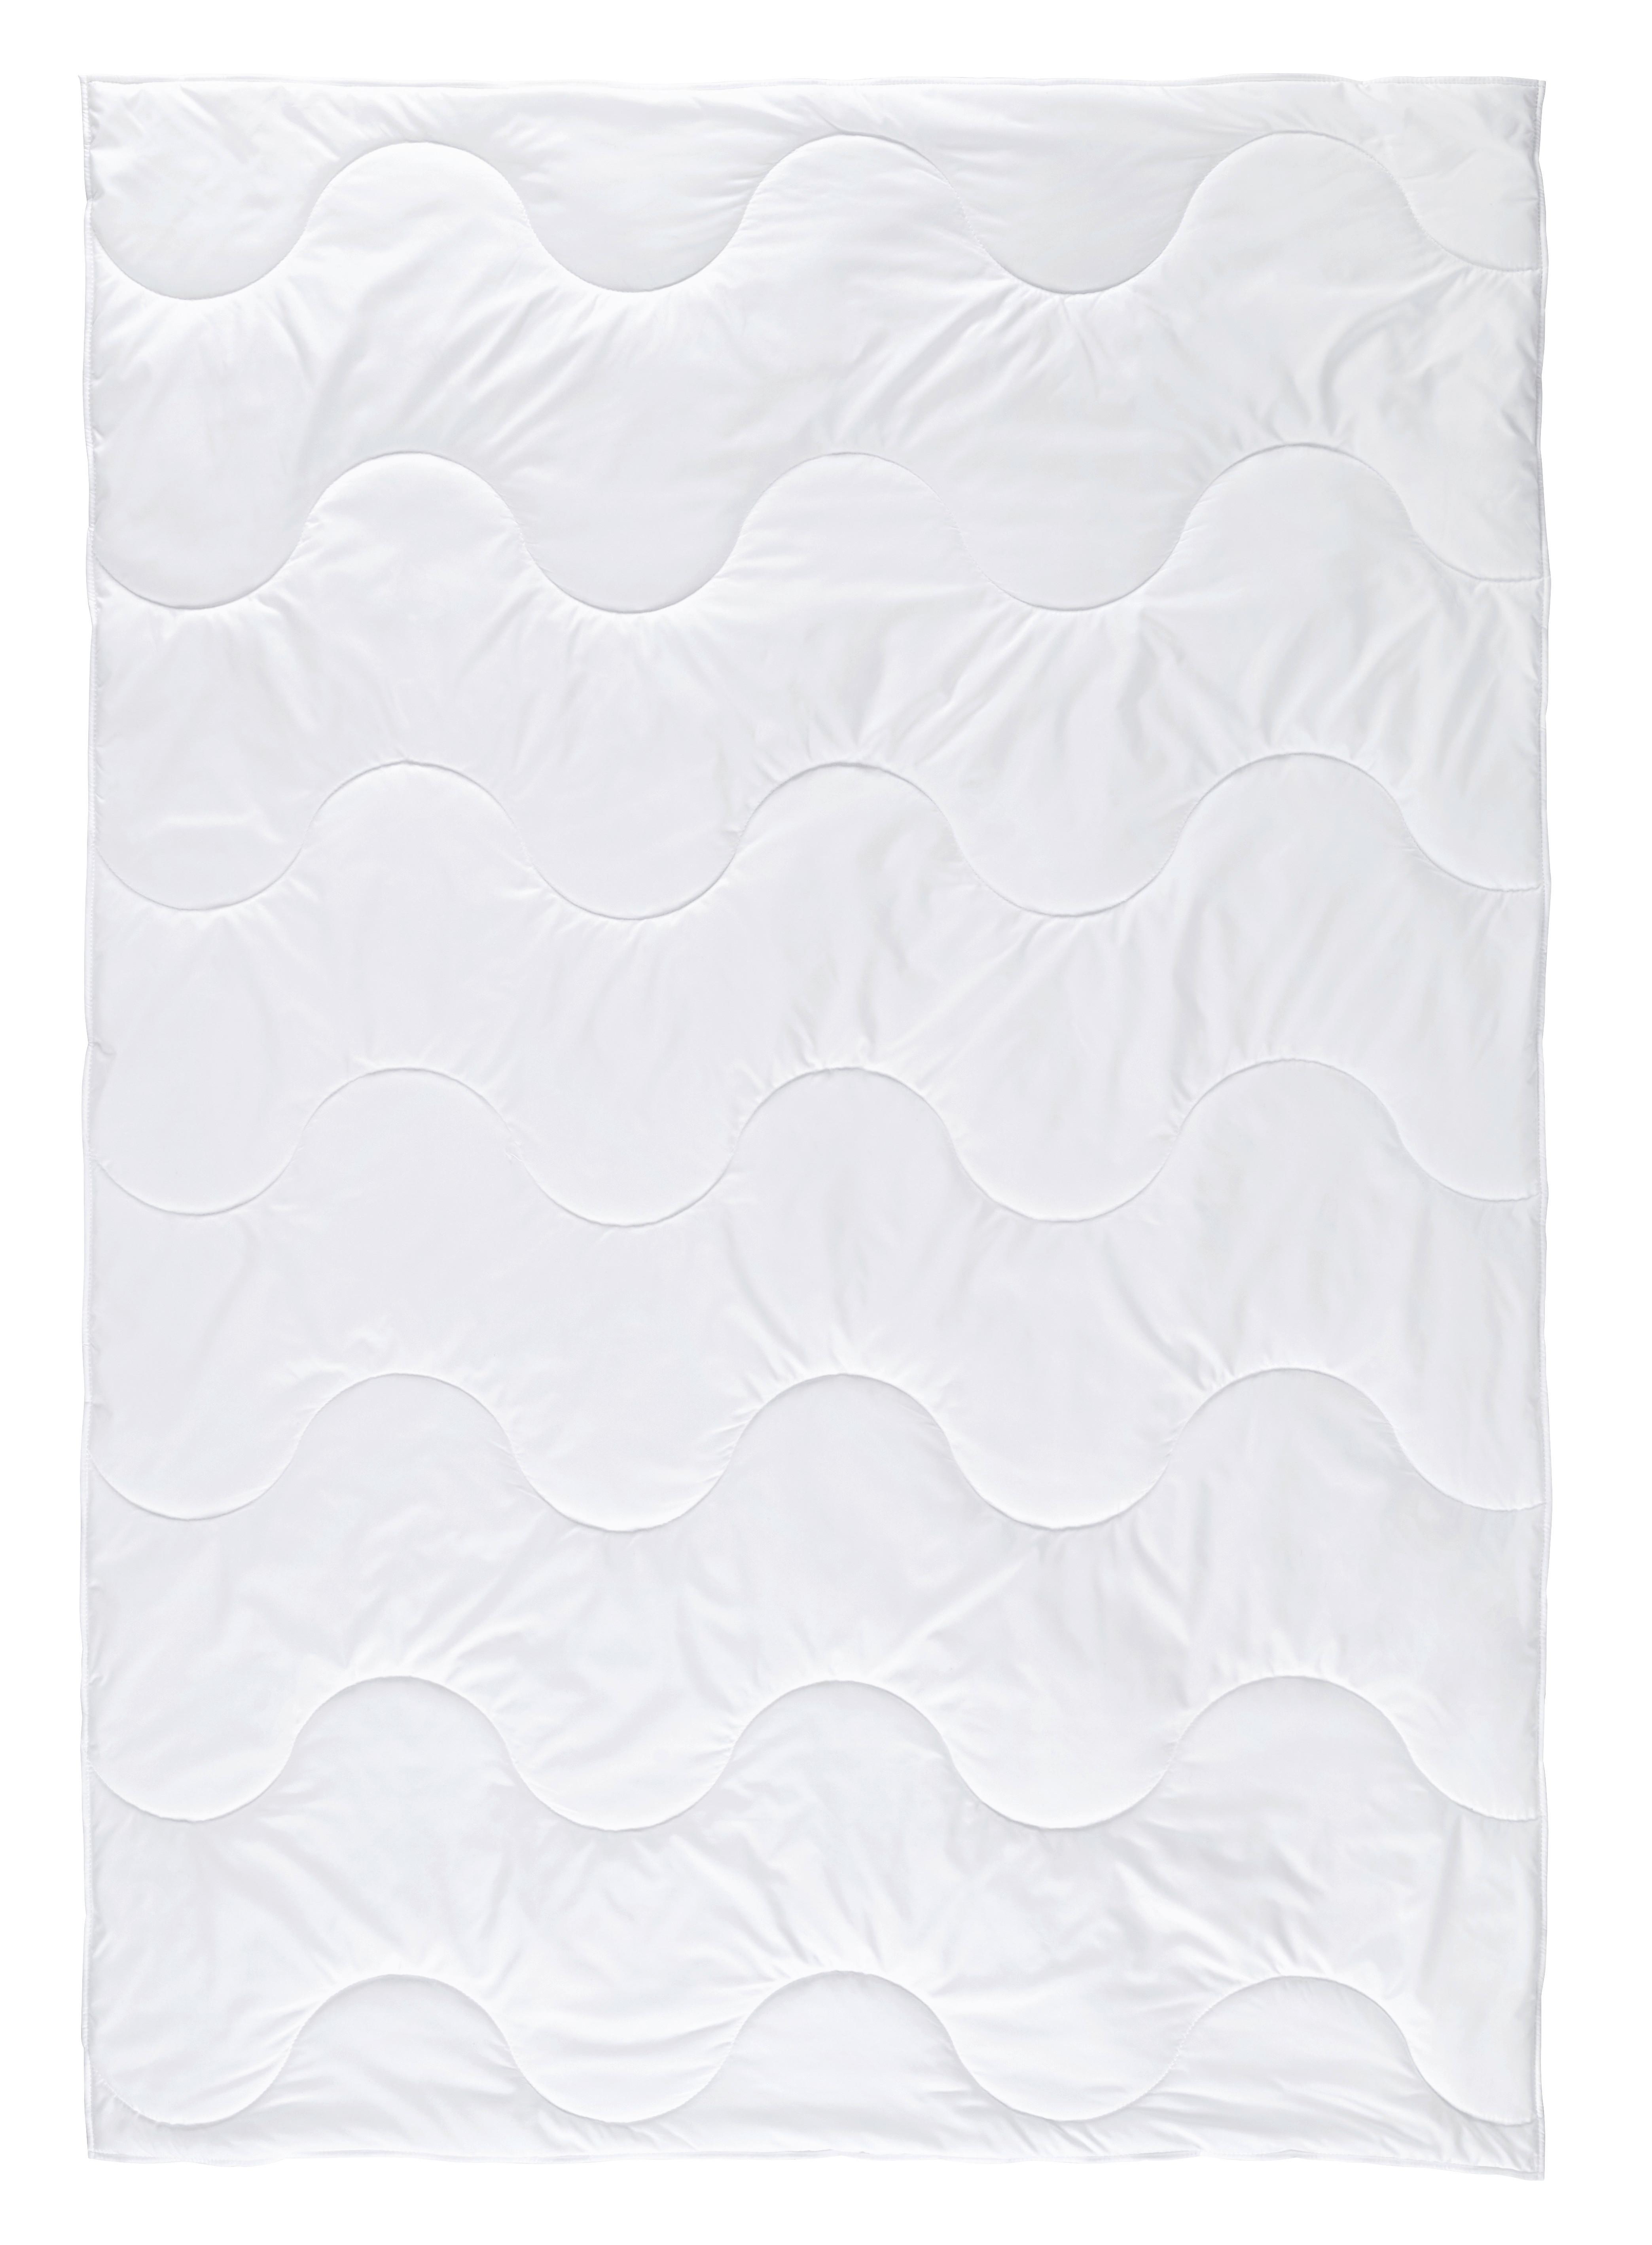 Sommerdecke Zilly Cool In Weiß Ca. 135-140x200cm - bílá, textil (135-140/200cm) - Nadana